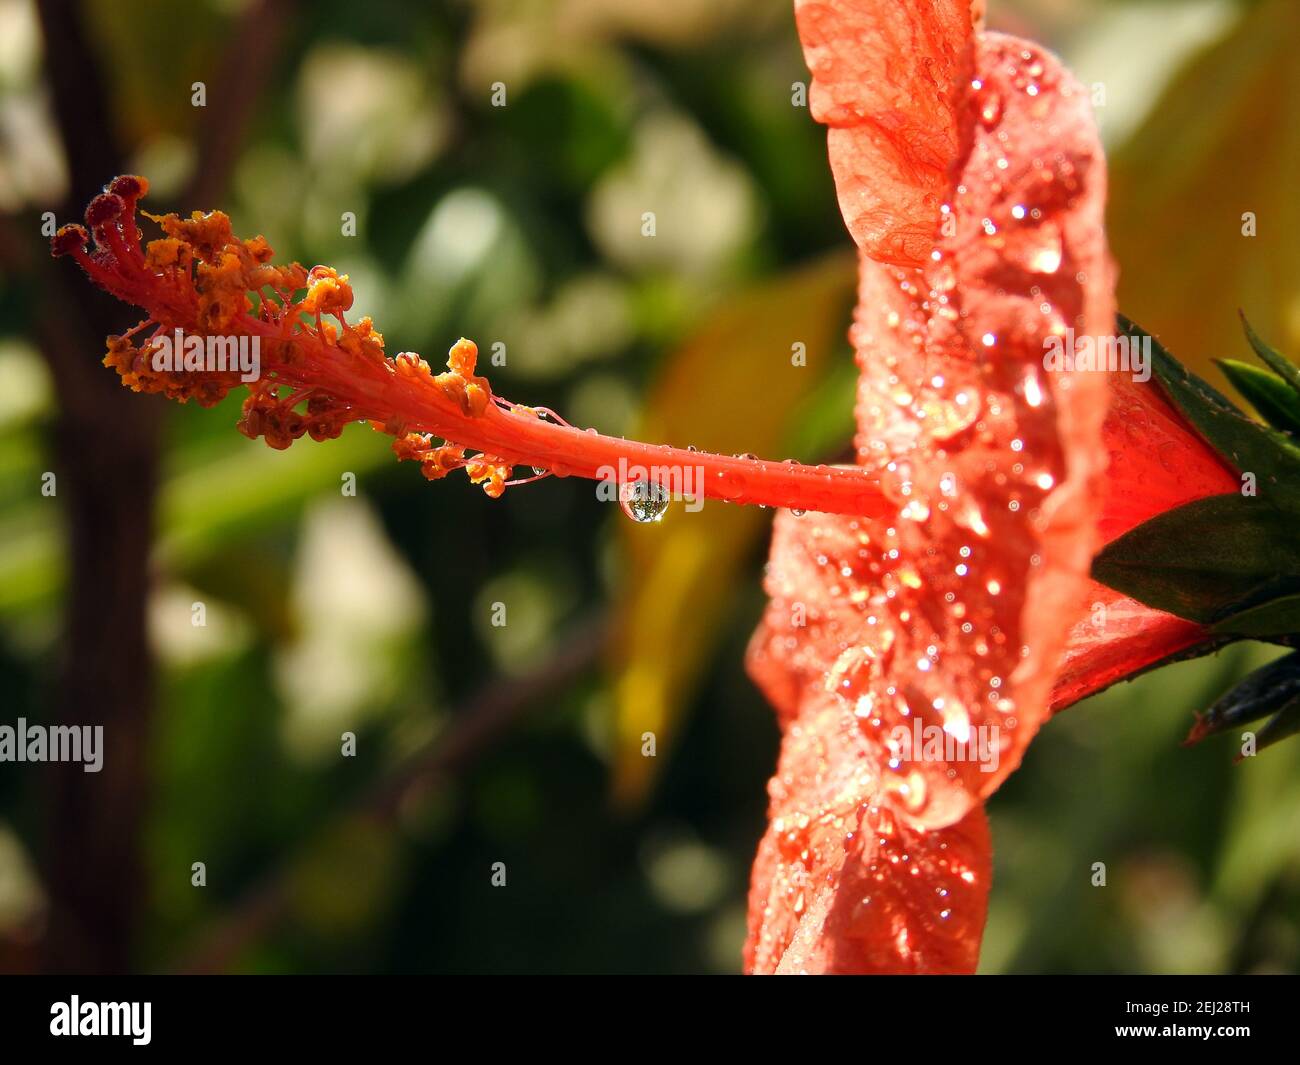 Gros plan d'une fleur d'hibiscus rouge avec gouttes d'eau, fleur rouge avec gouttes de rosée dessus, gouttes de pluie sur l'hibiscus rouge Banque D'Images